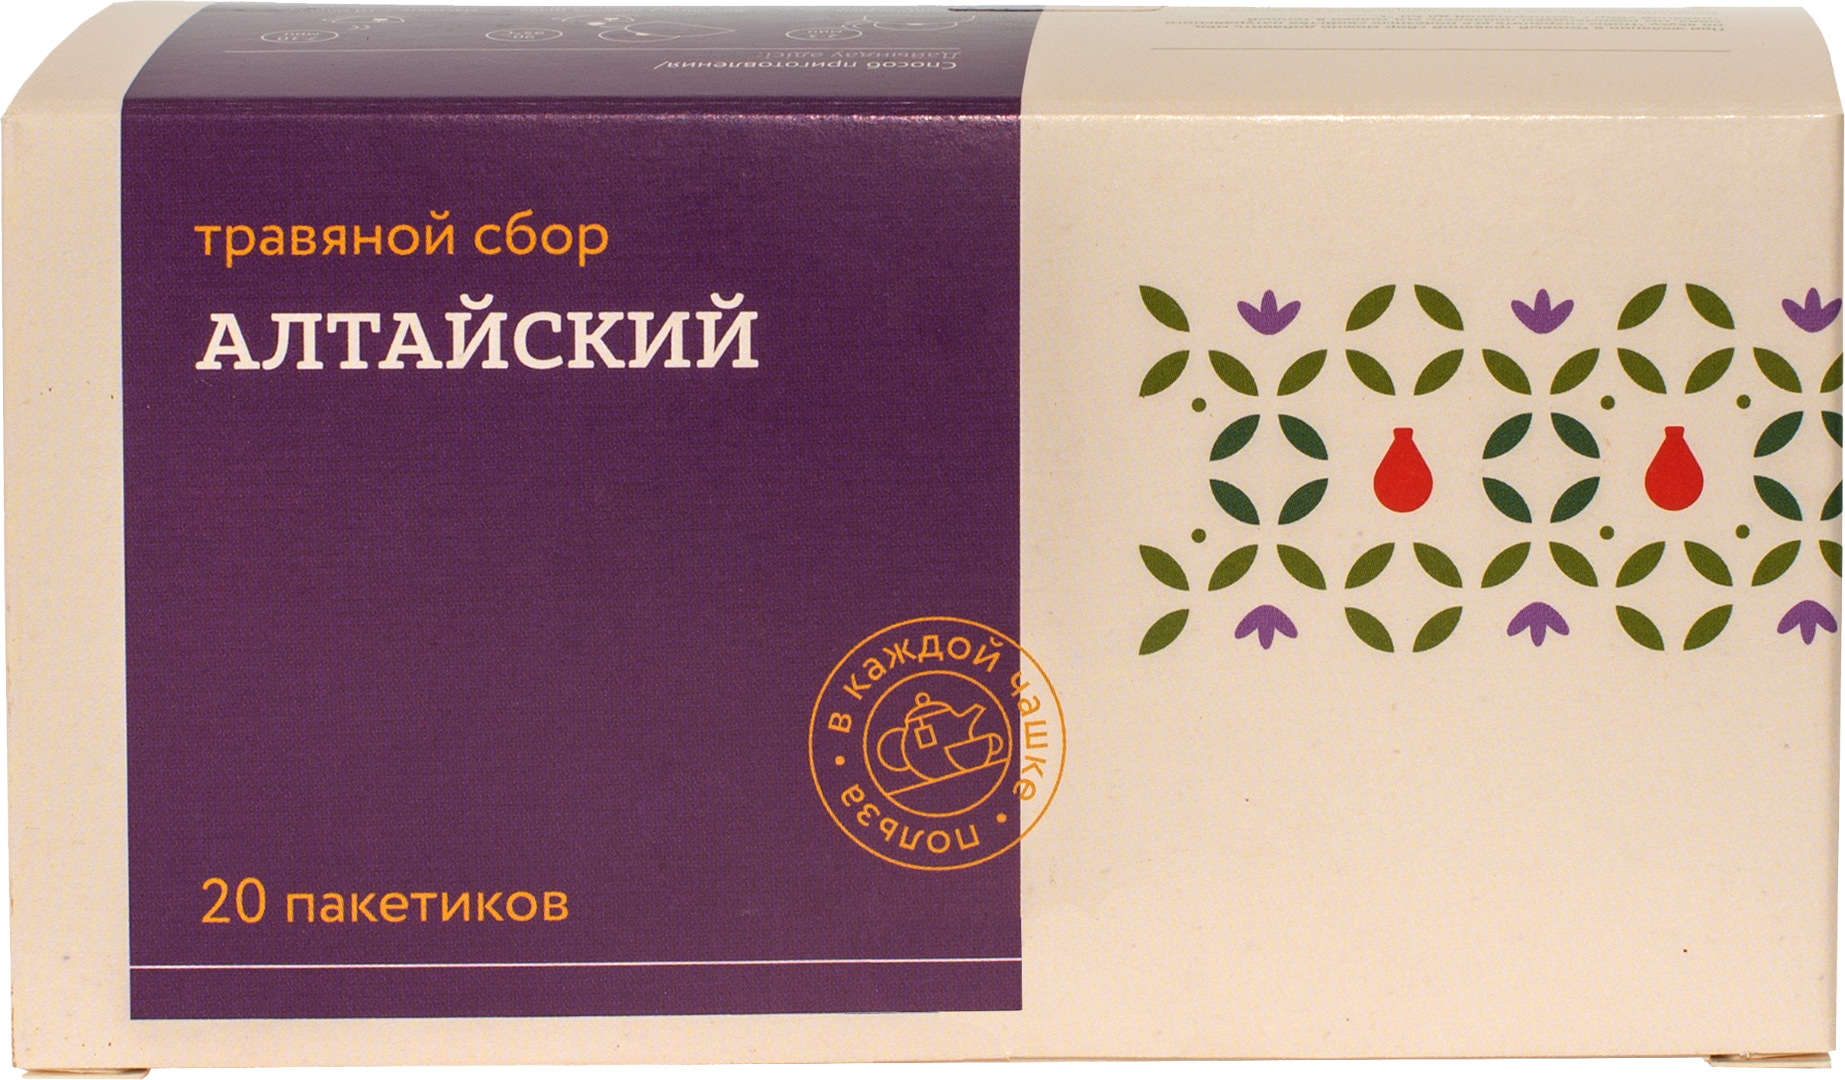 Травяной сбор ТРАВЫ И ПЧЕЛЫ Алтайский 40 г 202г картонная коробка